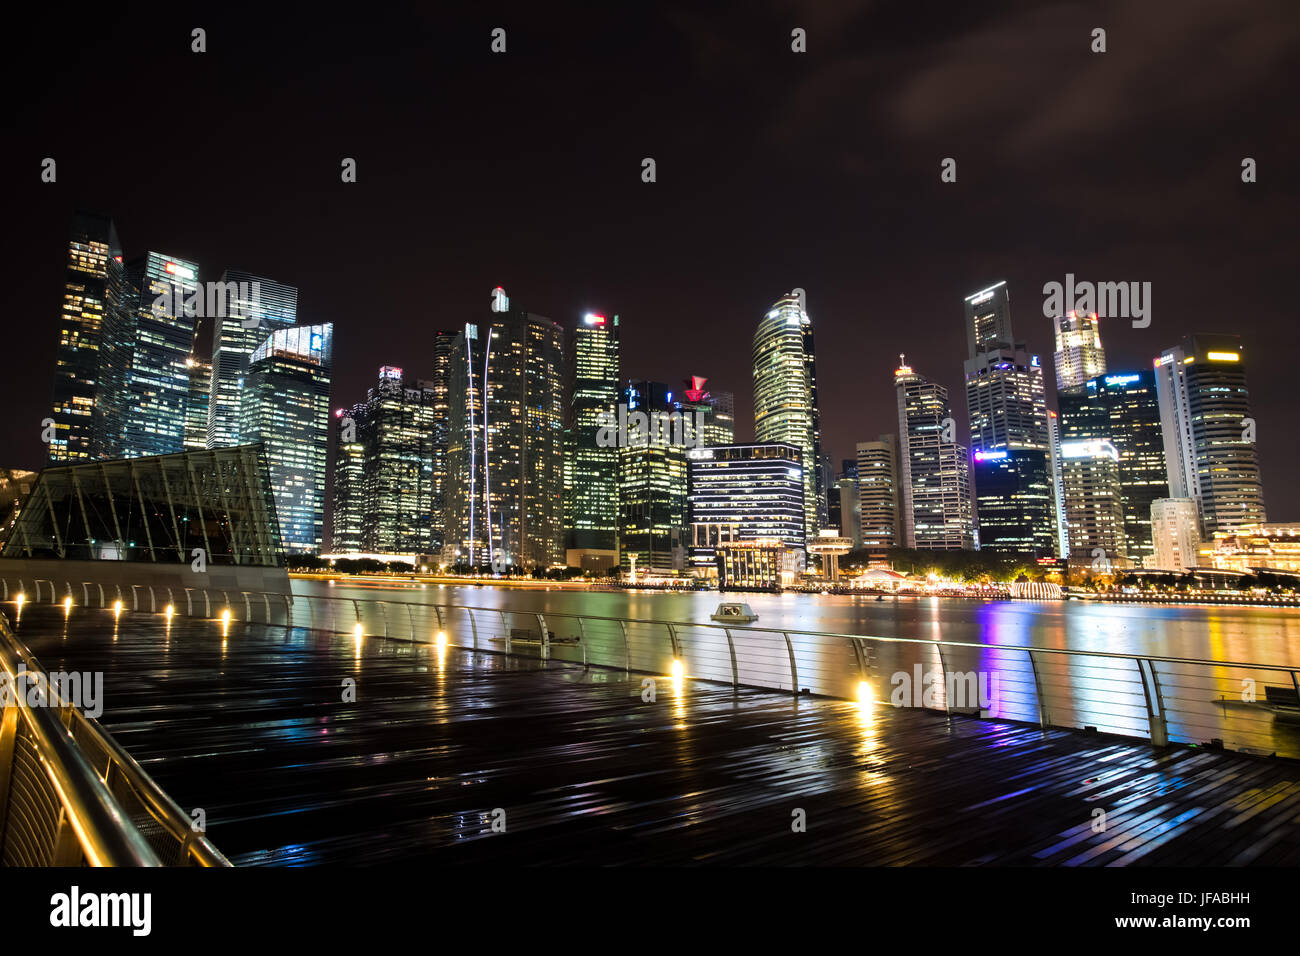 MARINA BAY, Singapur - 19. Januar 2017: Landschaft der Bucht vor in der Szene von gewerblich genutzten Gebäuden in Singapur. Stockfoto